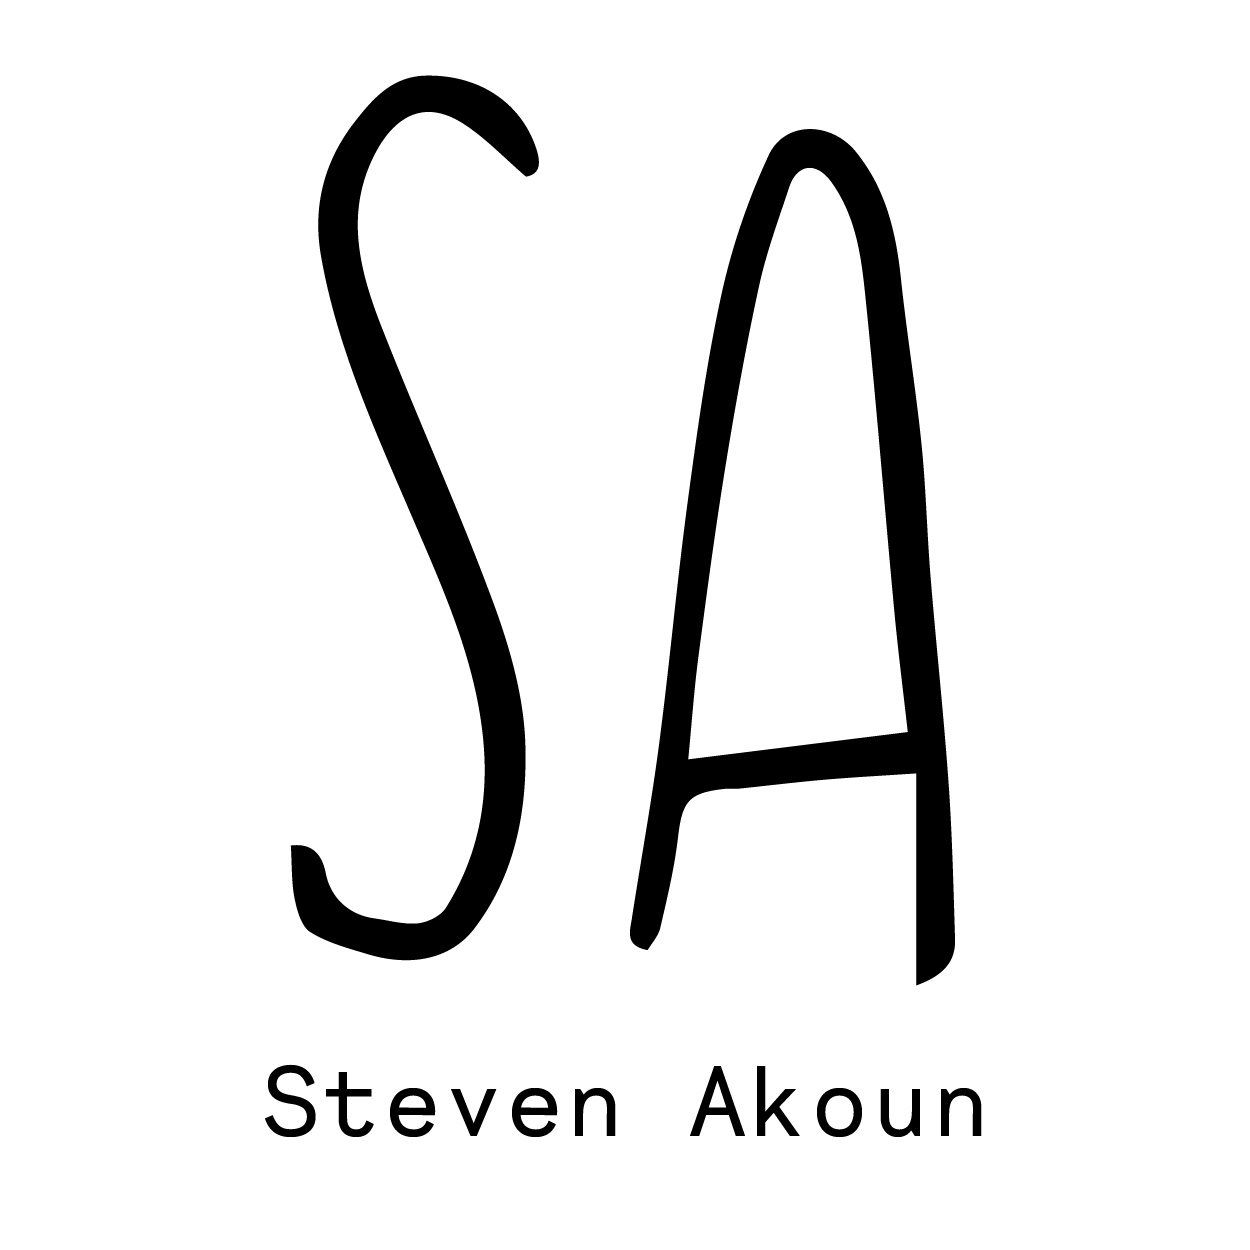 Steven Akoun